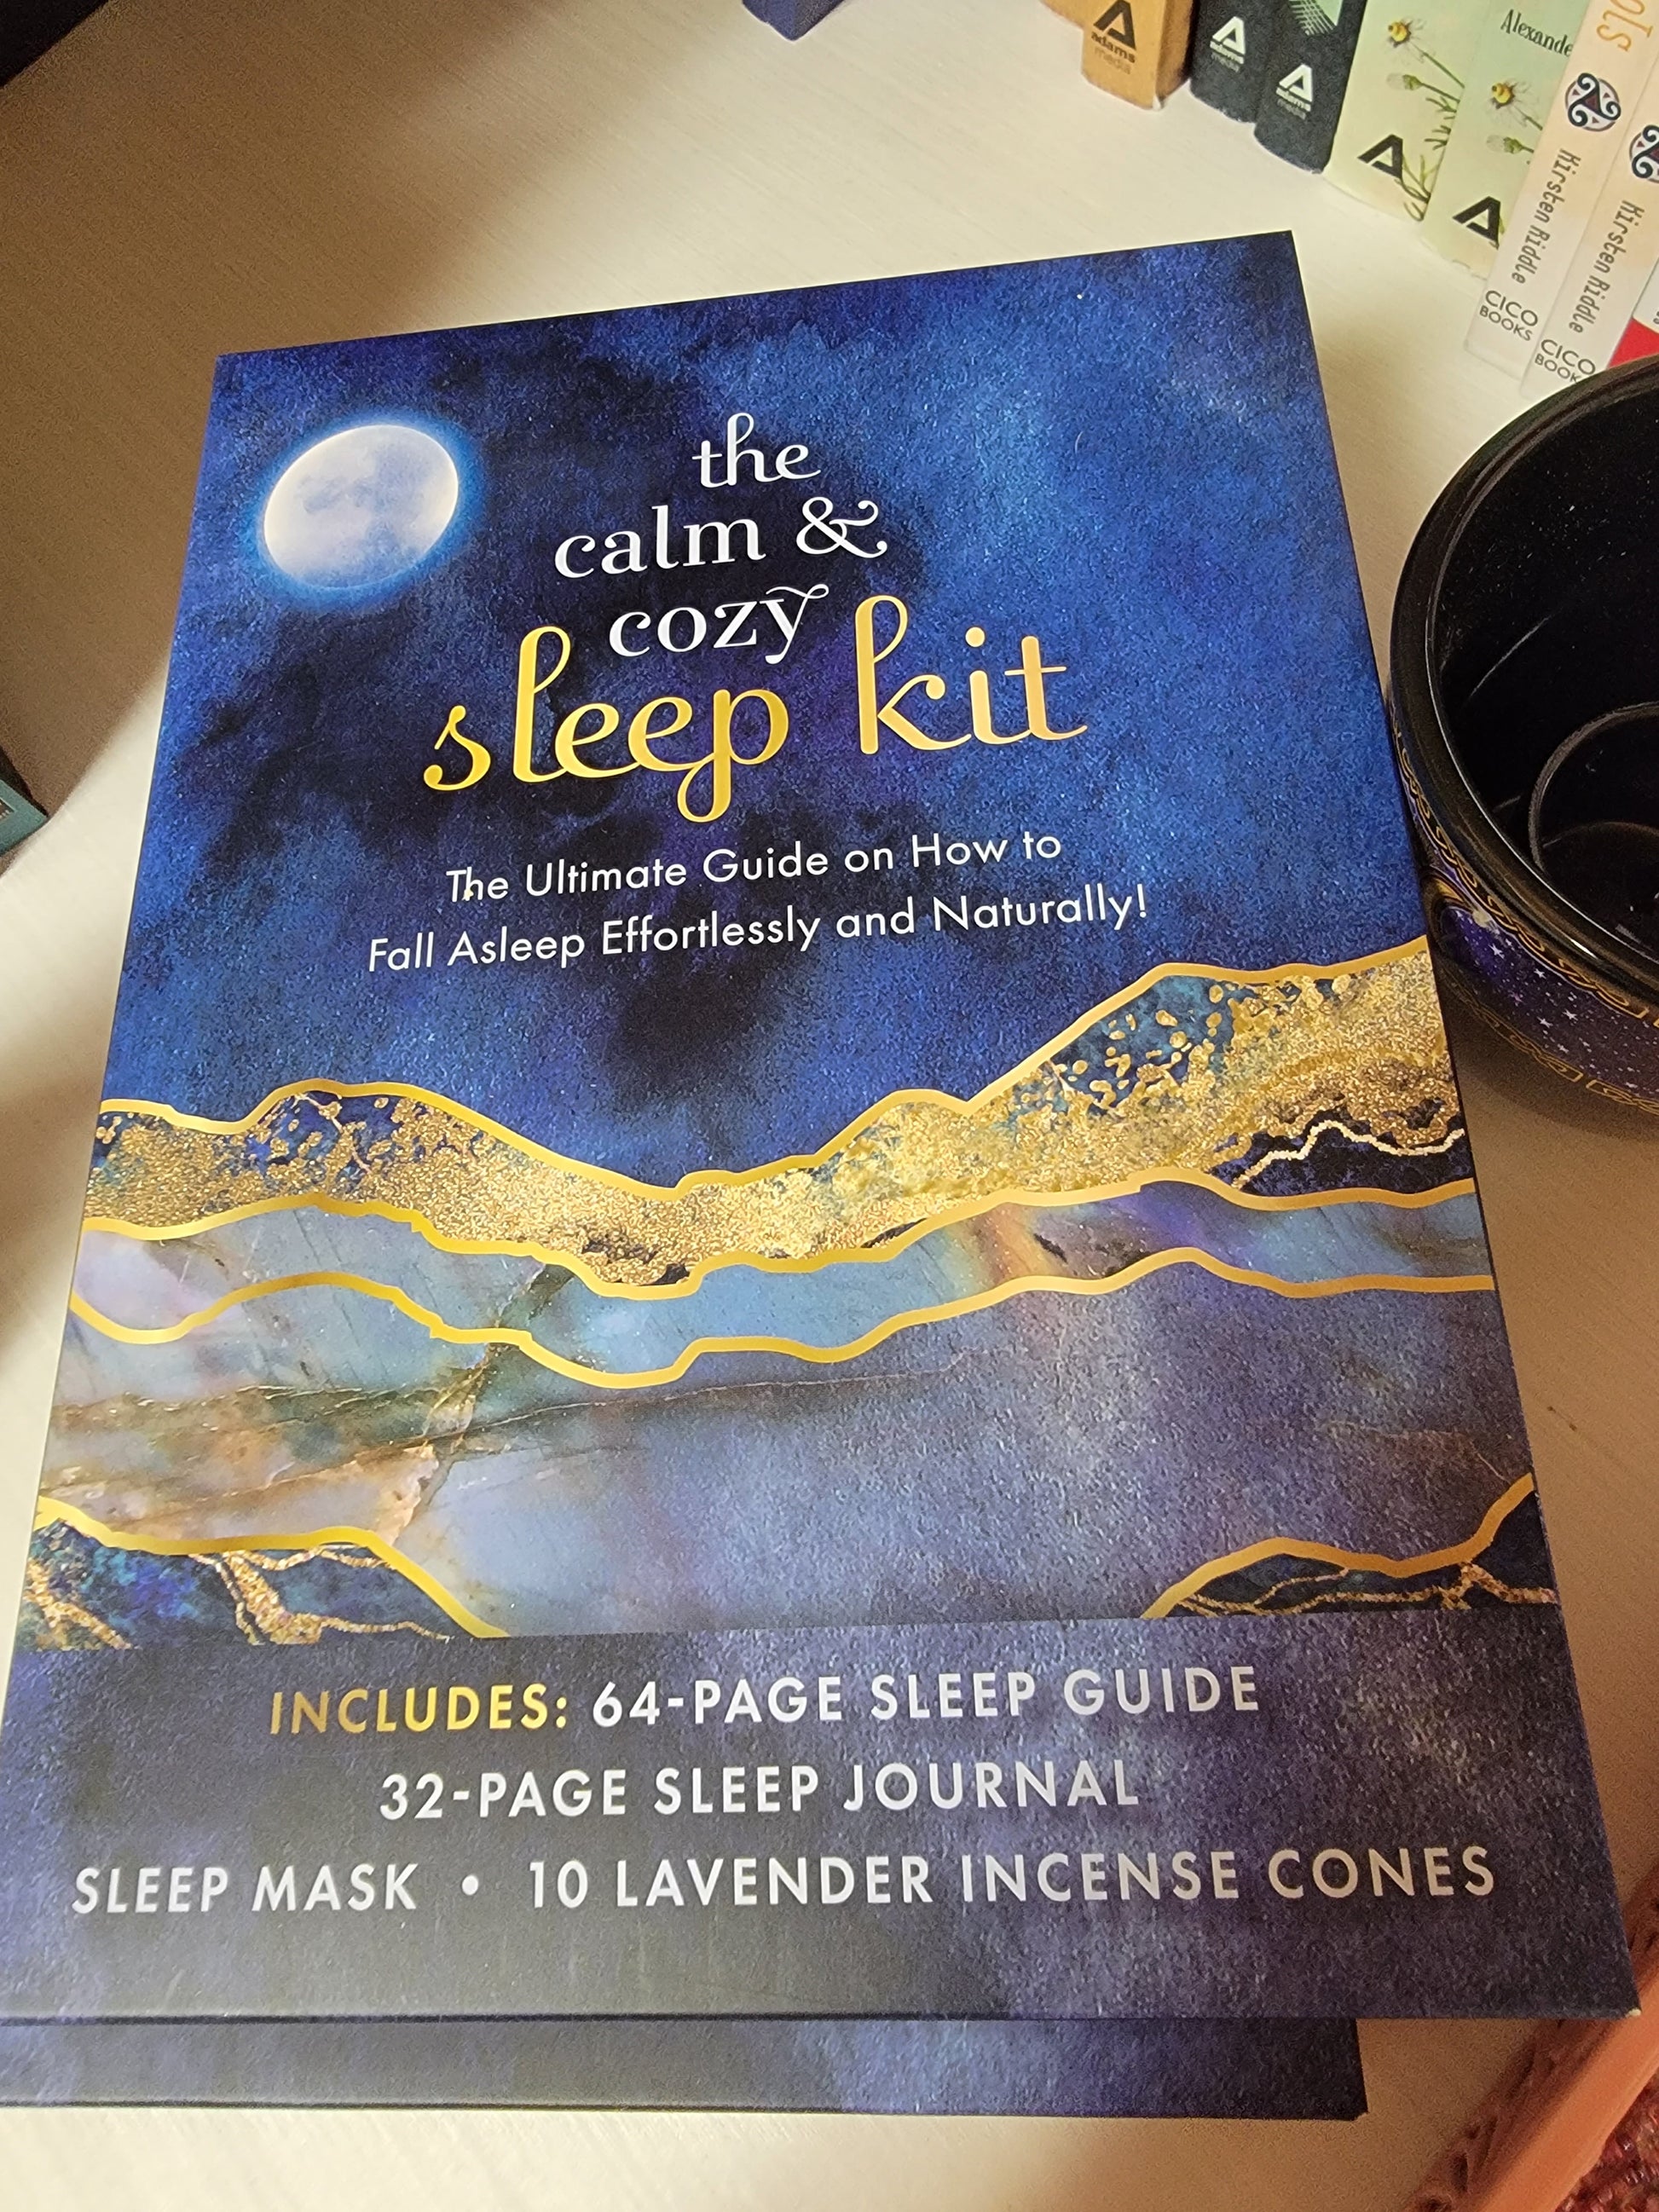 The Calm & Cozy Sleep Kit